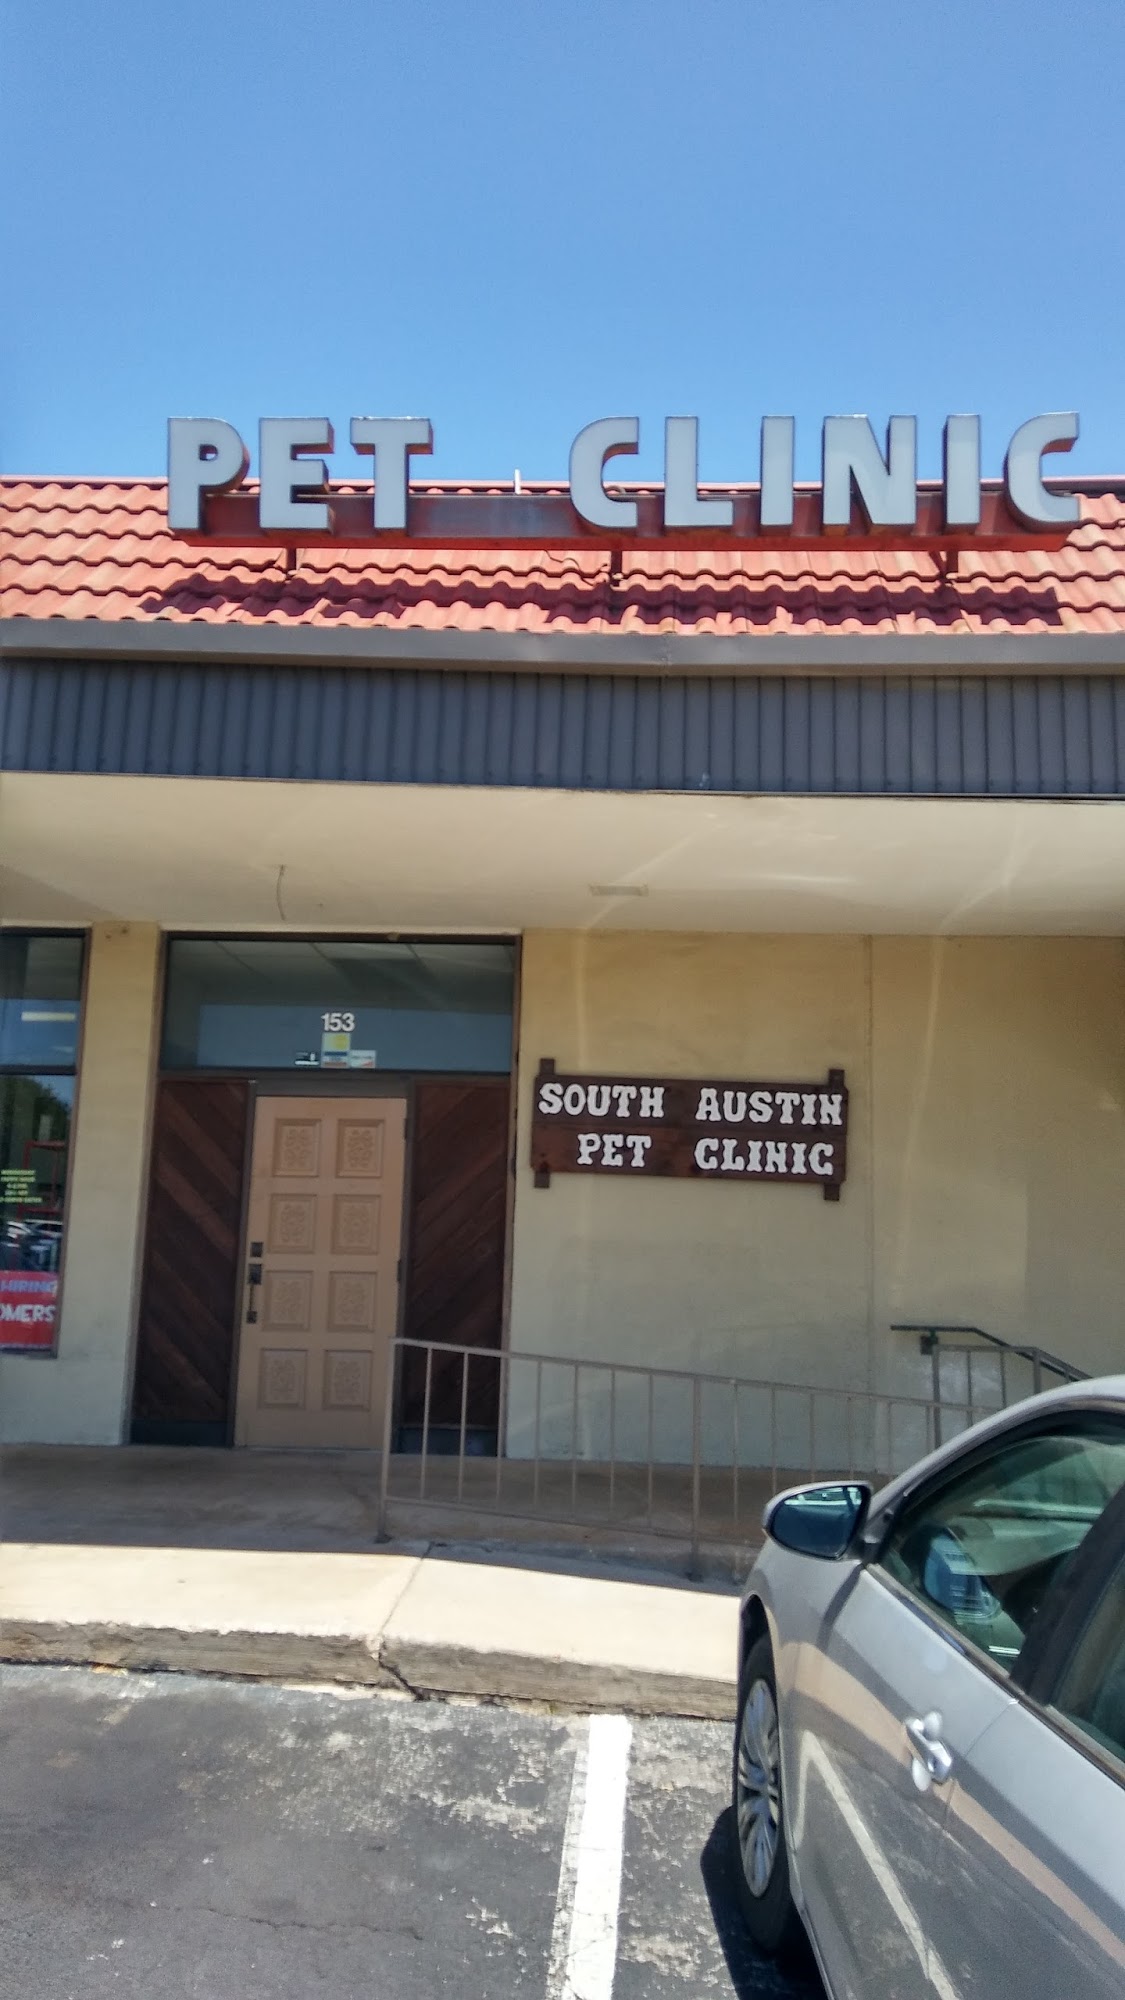 South Austin Pet Clinic